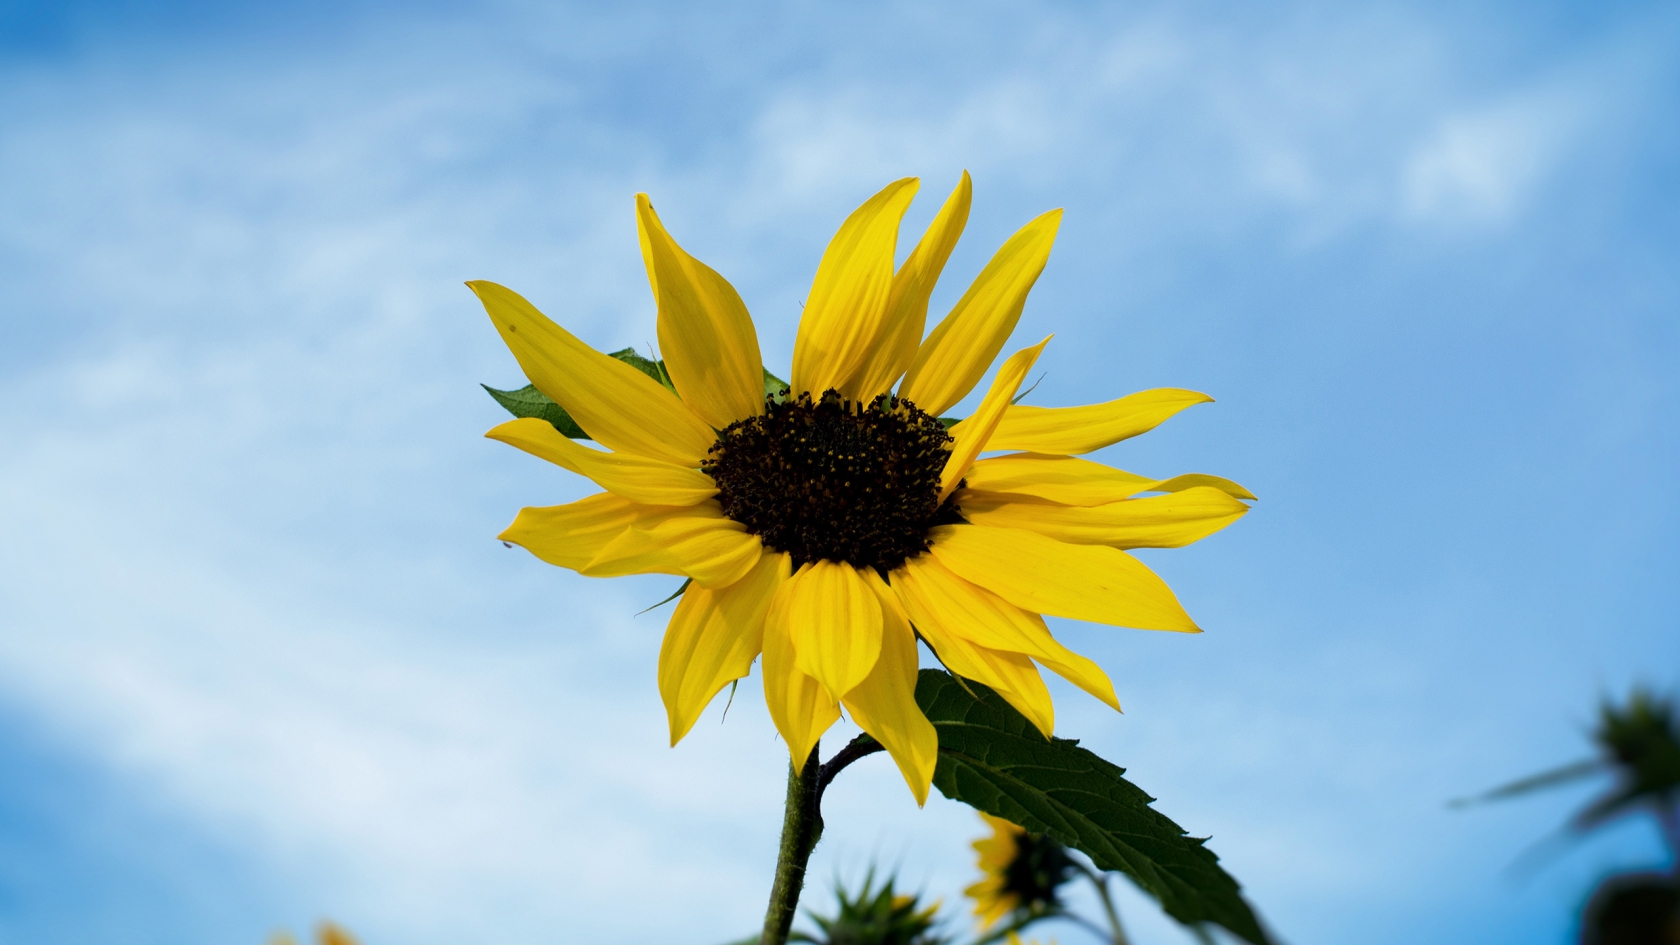 Single Sunflower for 1680 x 945 HDTV resolution